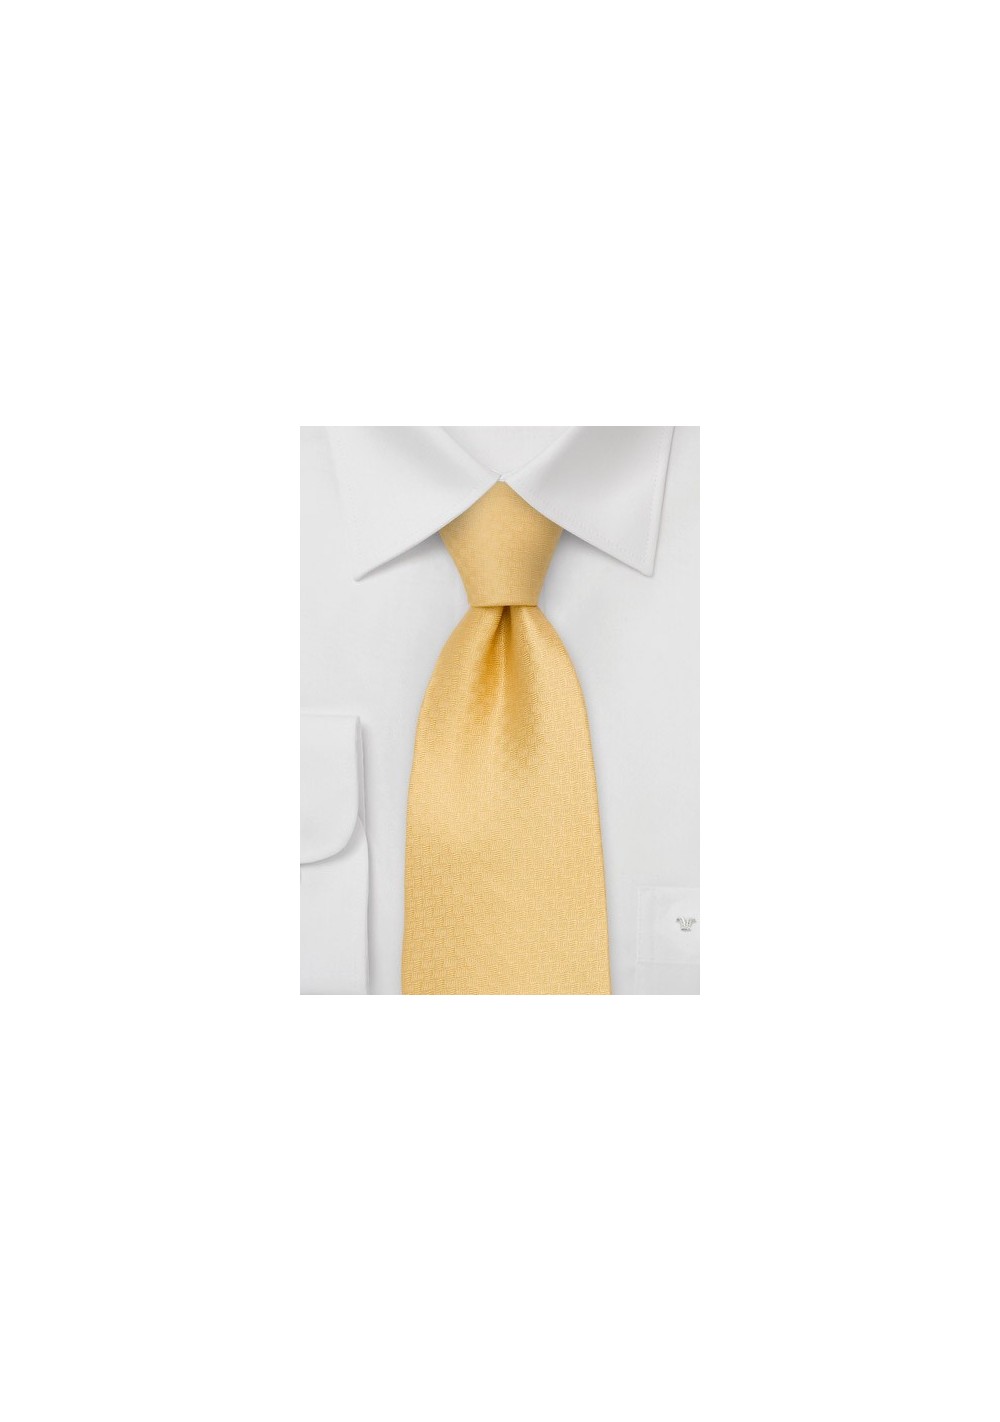 Yellow Designer Necktie - Solid Yellow Necktie by Chevalier